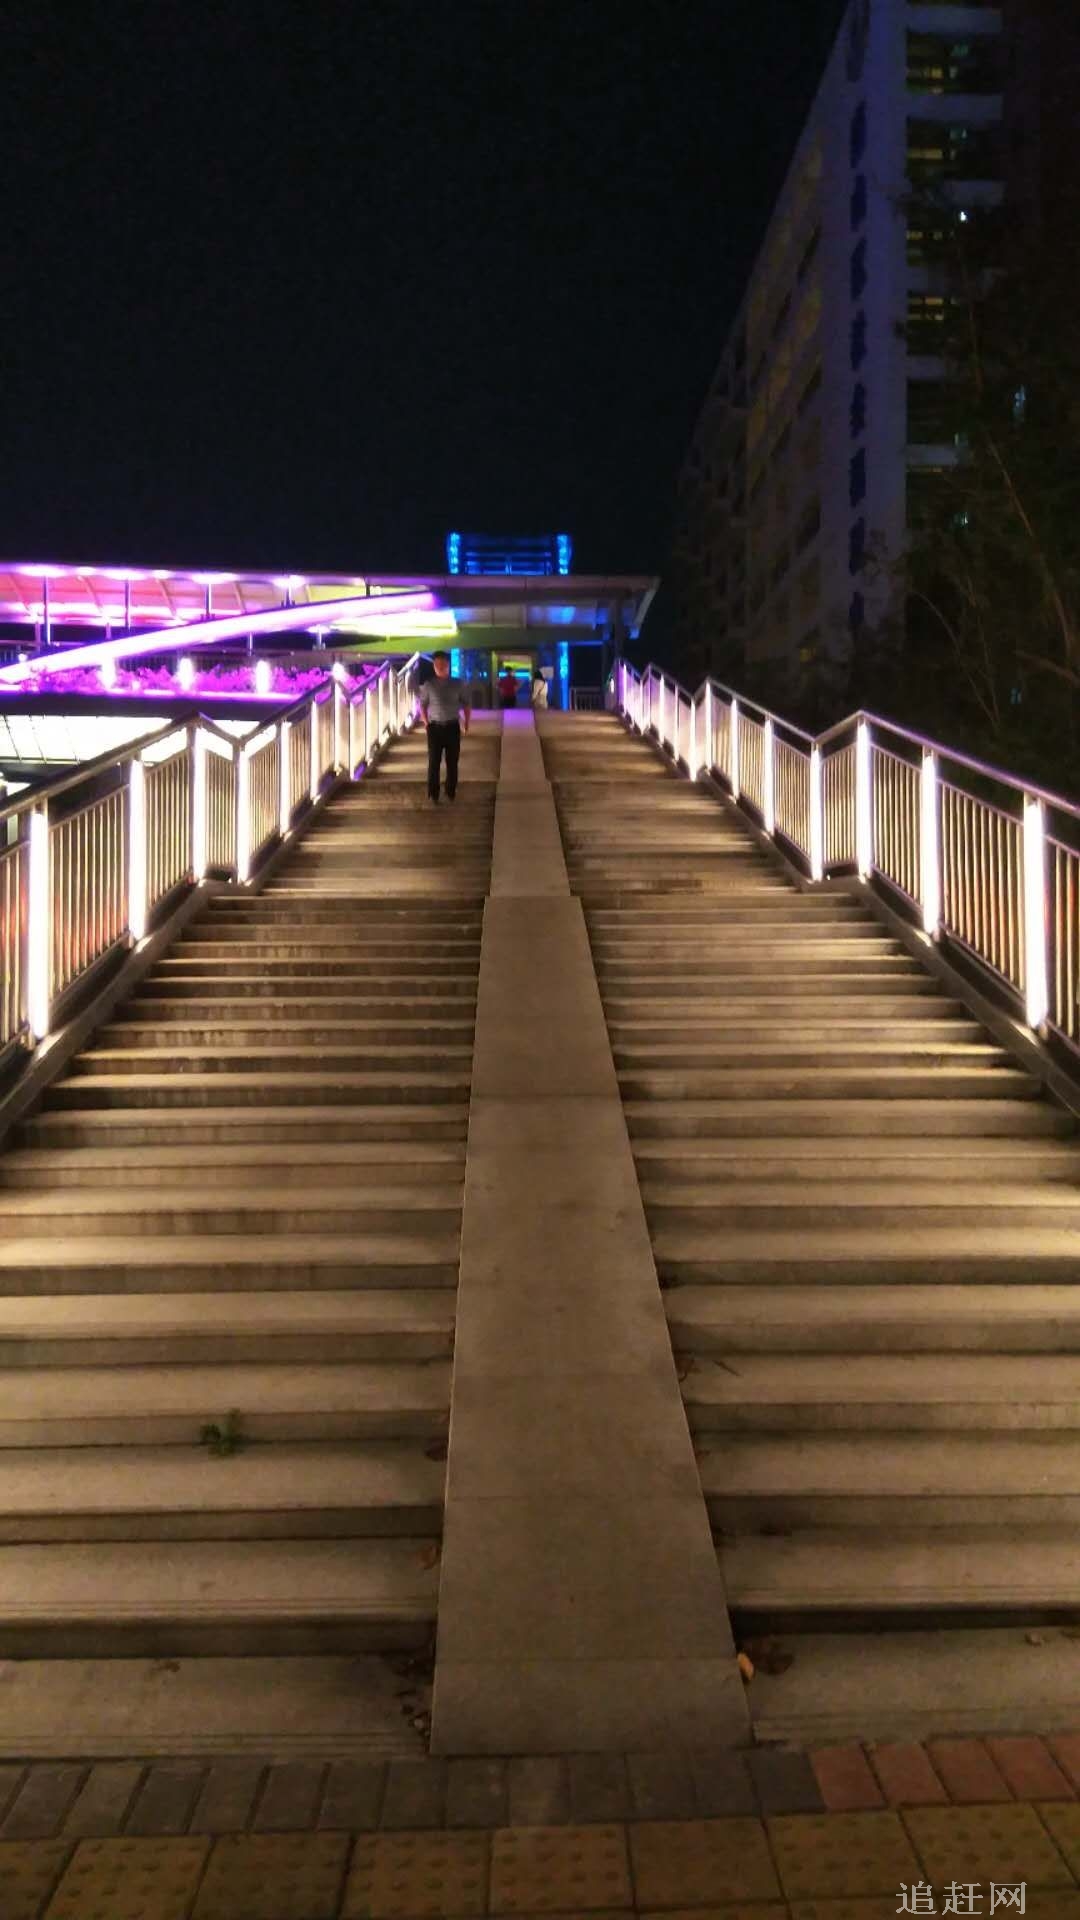 乌金屯松花江大桥是京哈公路第一长桥，位于德惠市姚家岗，松原市乌金屯处。